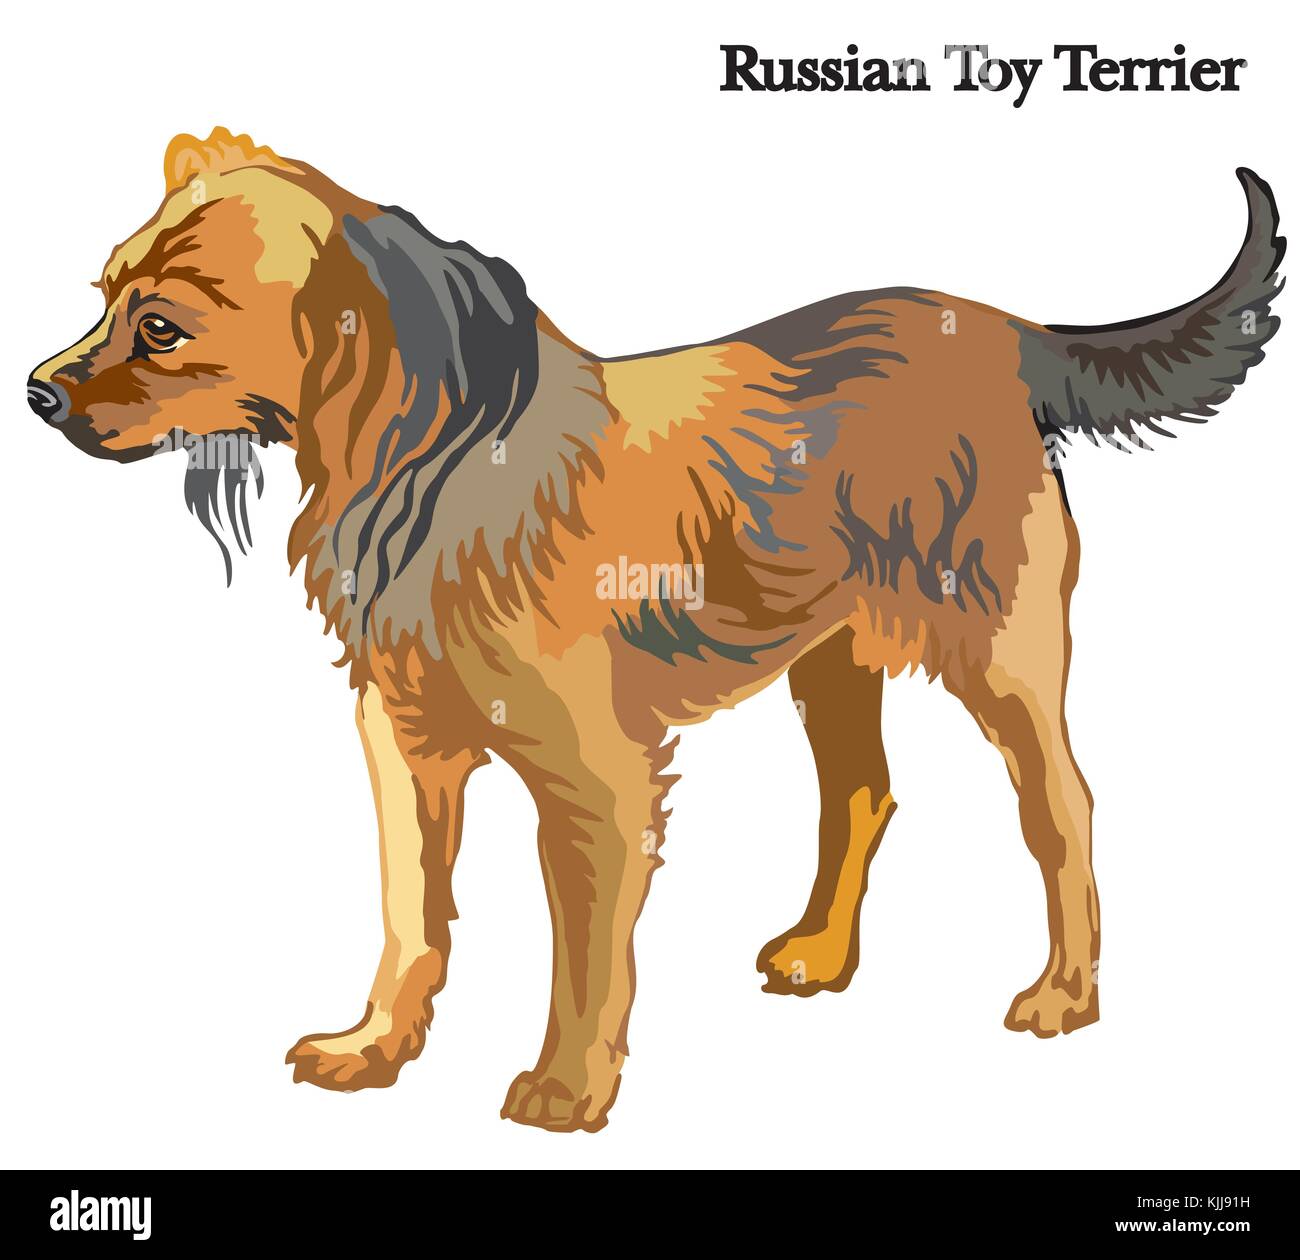 Portrait de l'article profil de chien terrier toy russe, vector illustration colorées isolé sur fond blanc Illustration de Vecteur